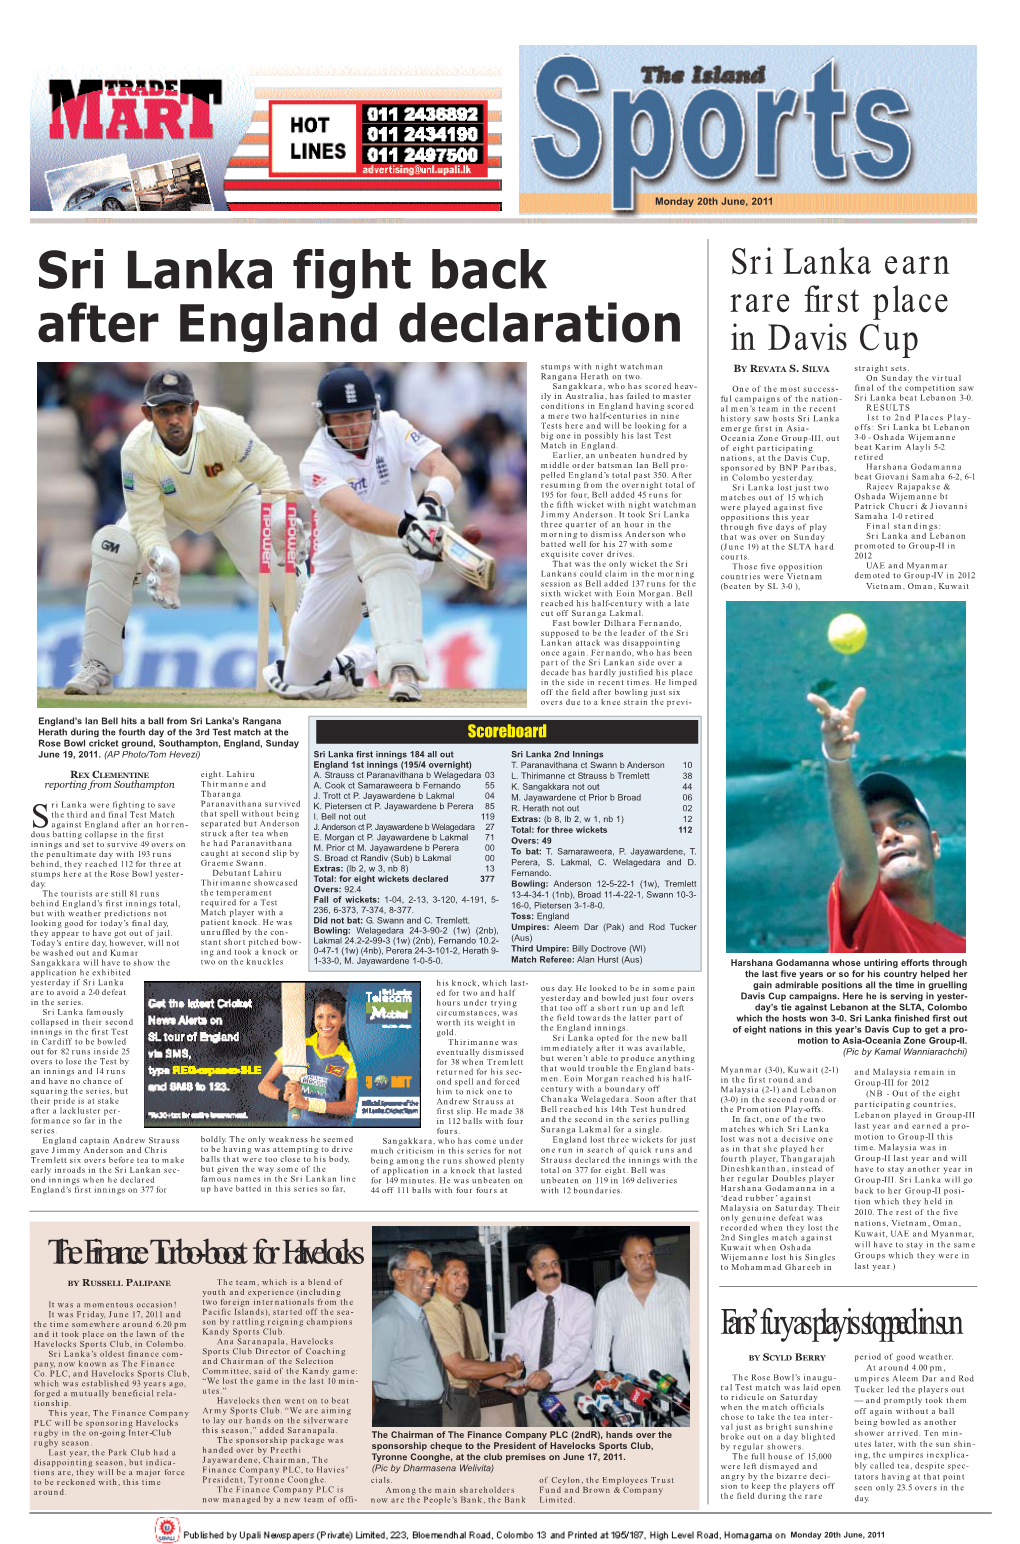 Sri Lanka Fight Back After England Declaration